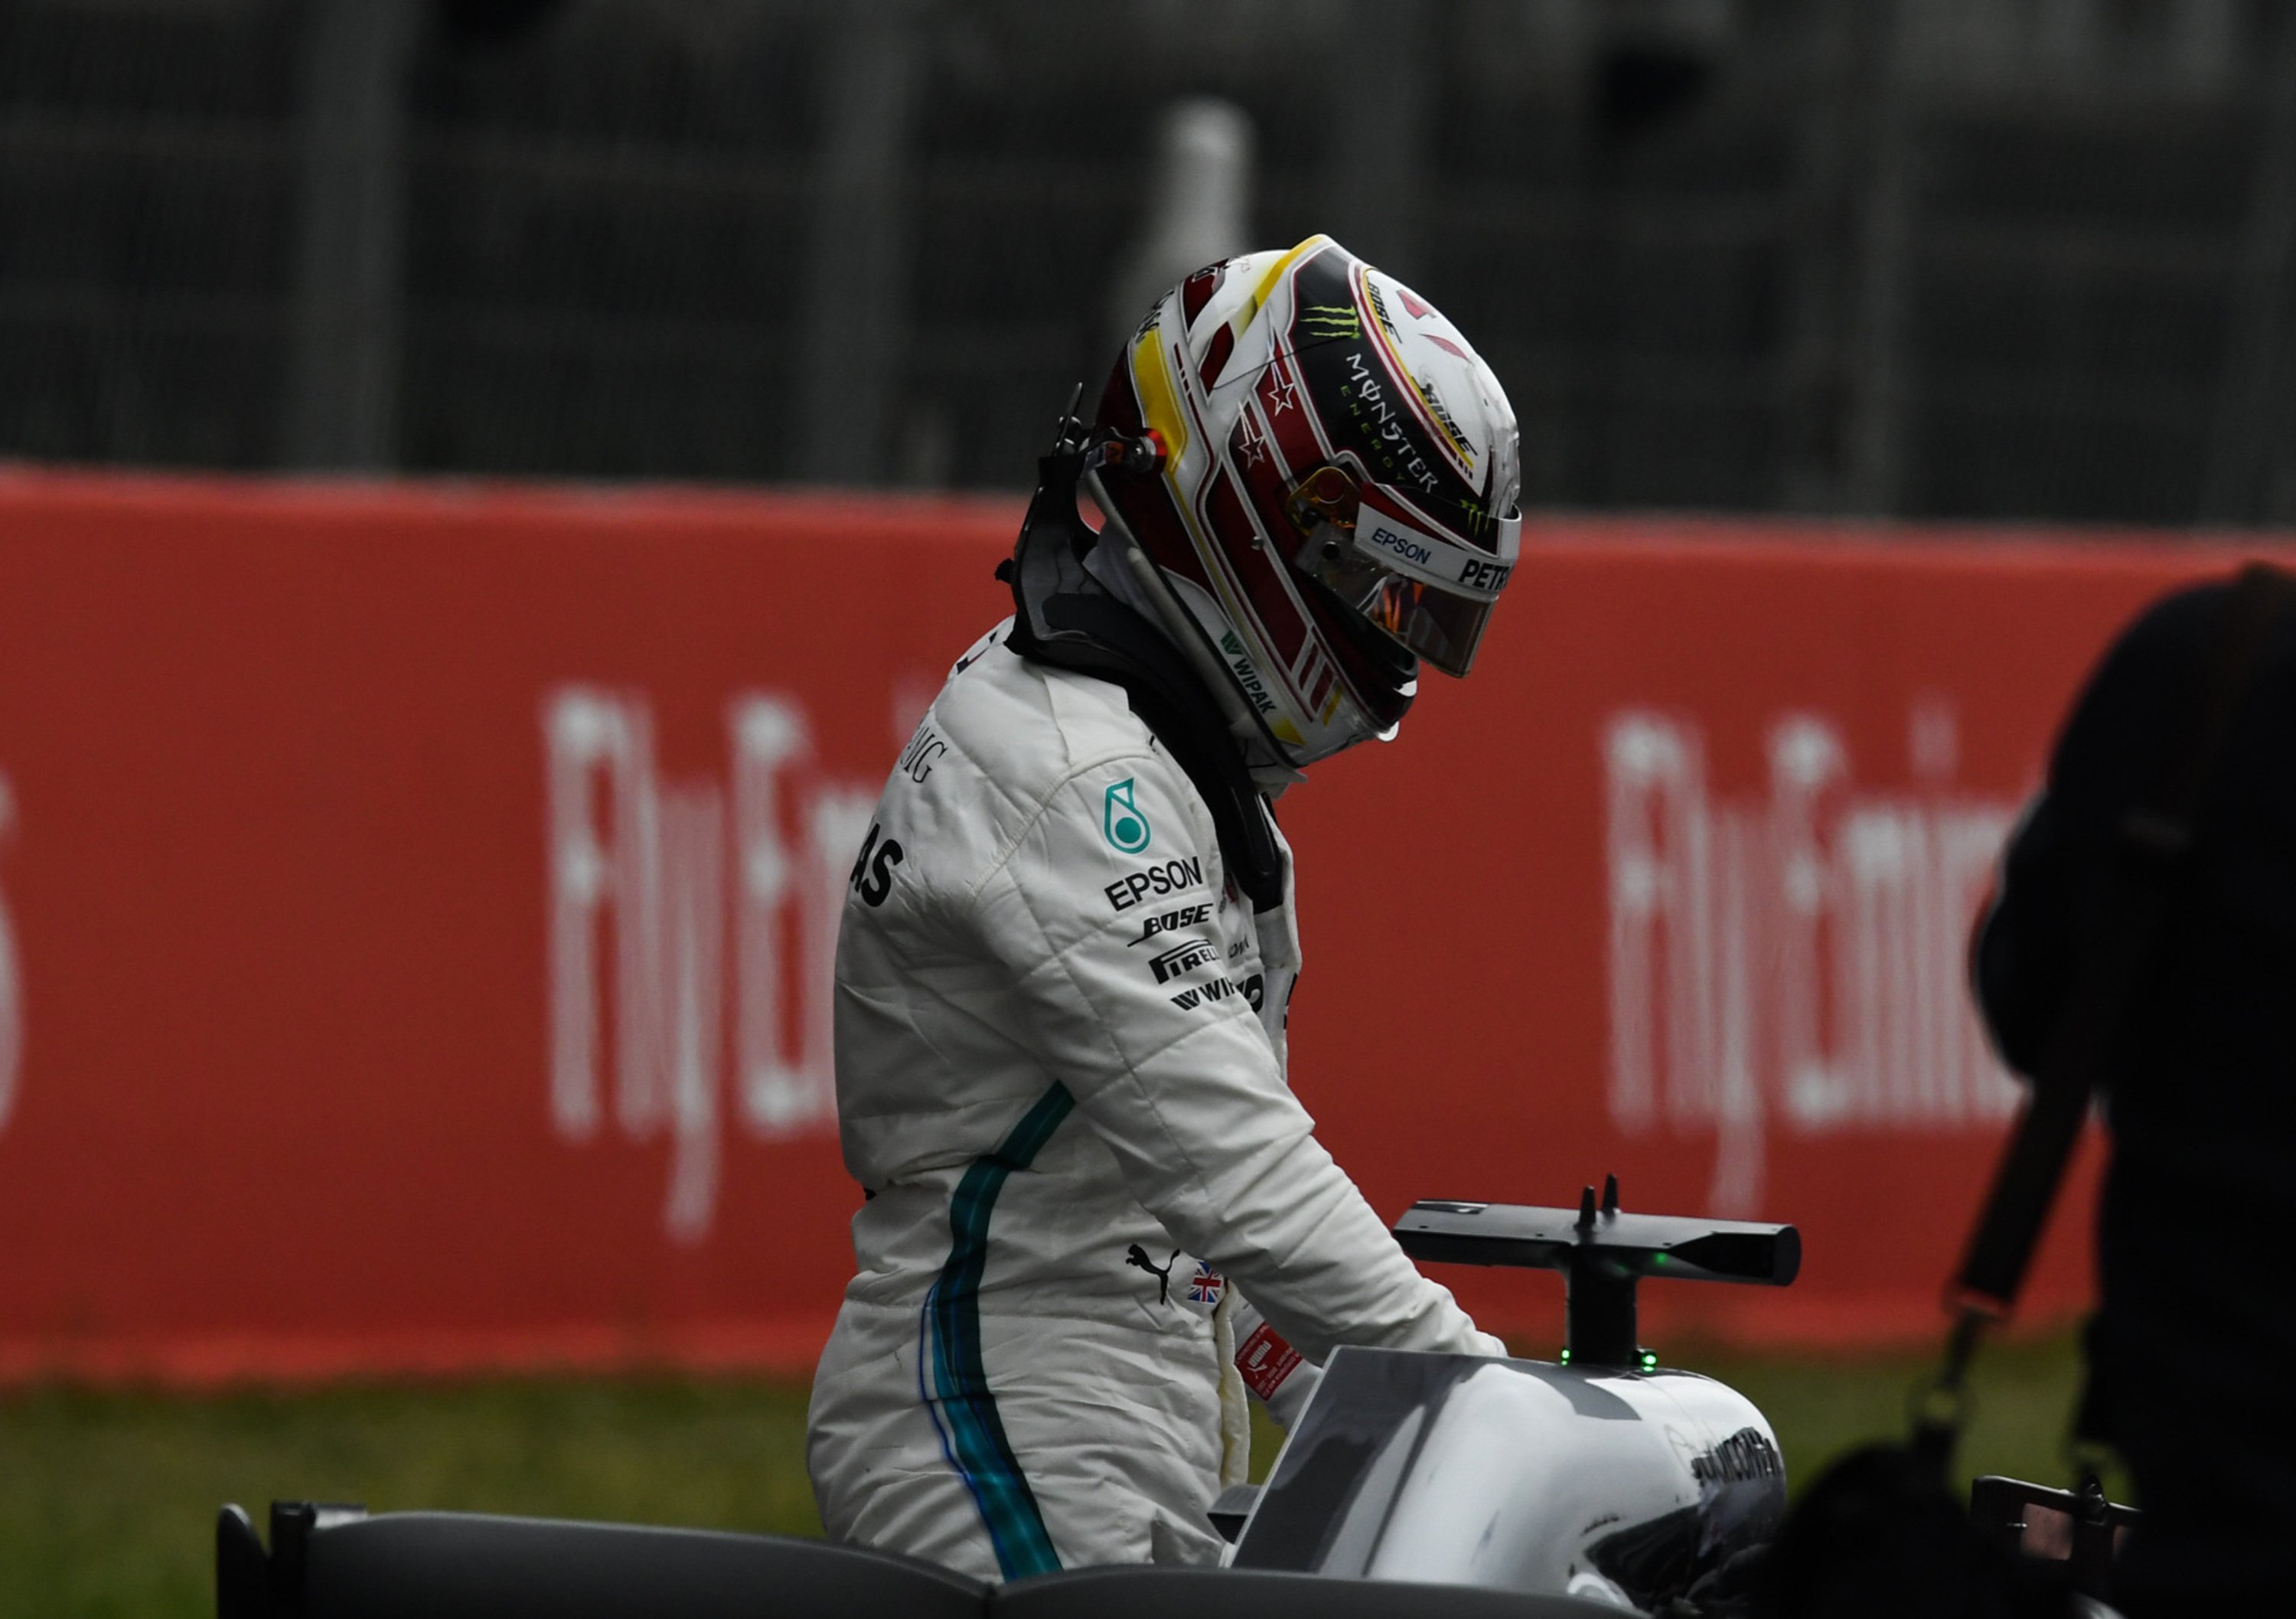 Formula 1: la classifica piloti e costruttori dopo il GP di Spagna